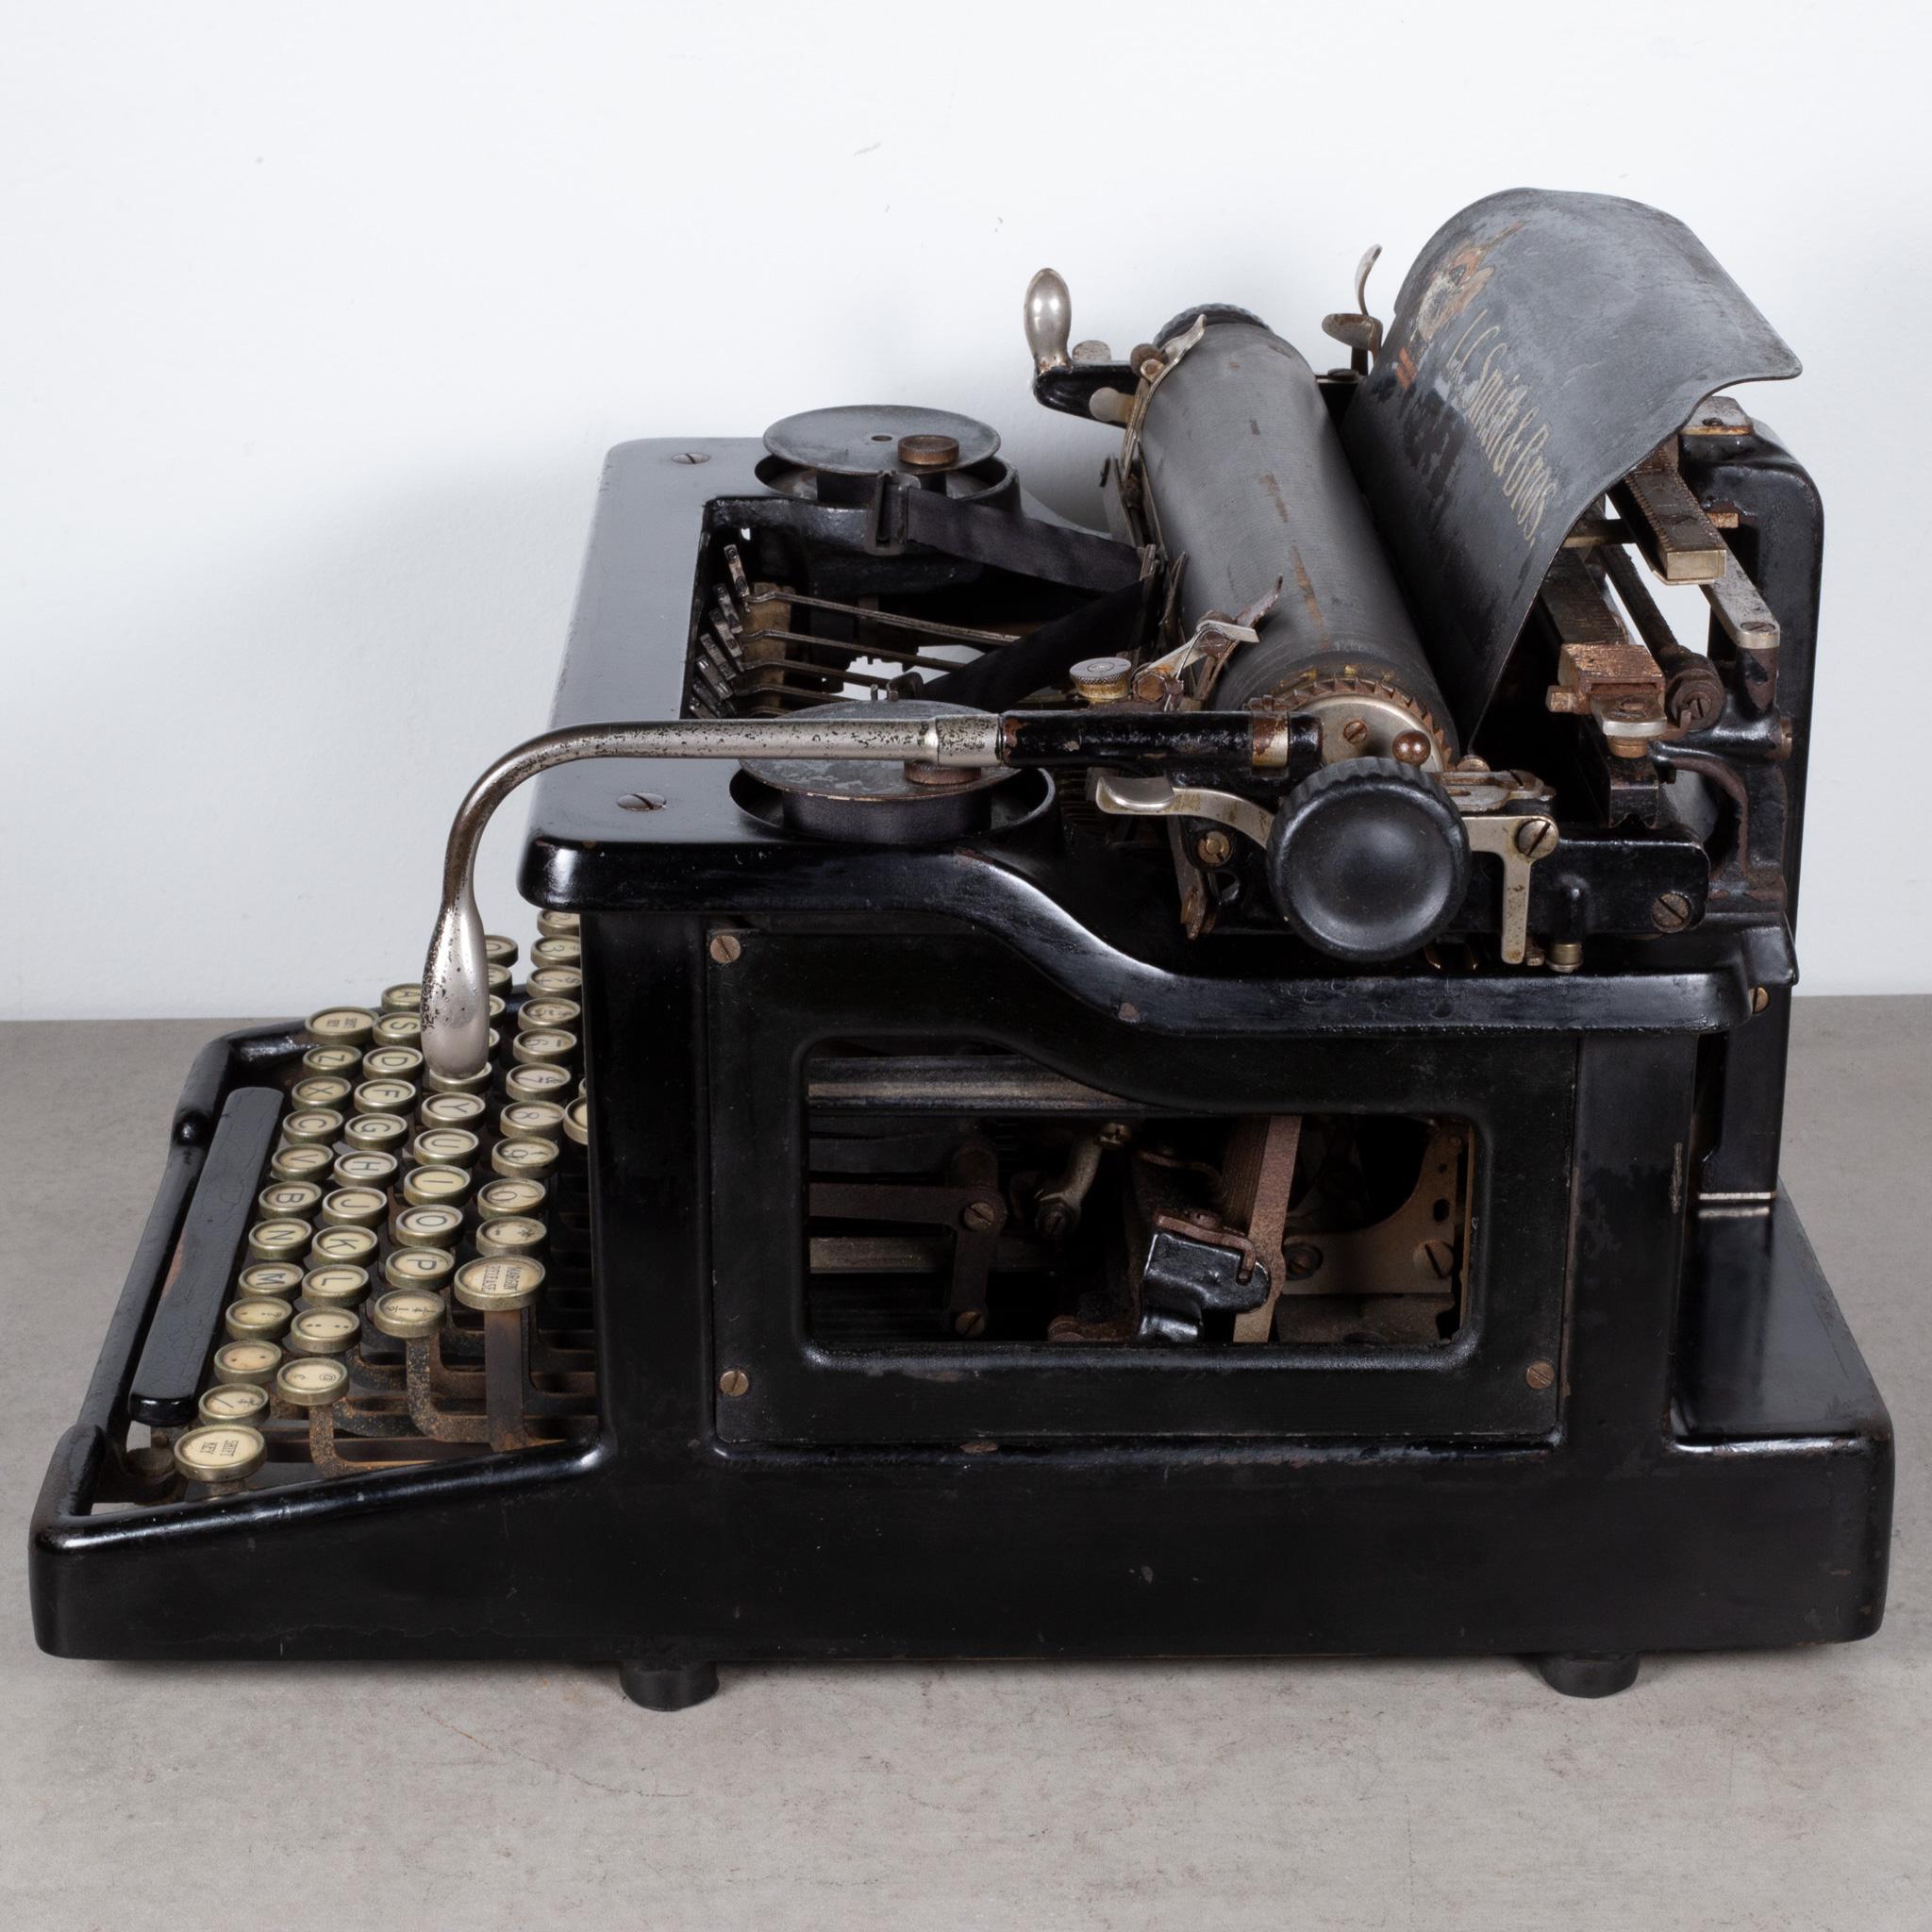 l.c. smith & bros typewriter